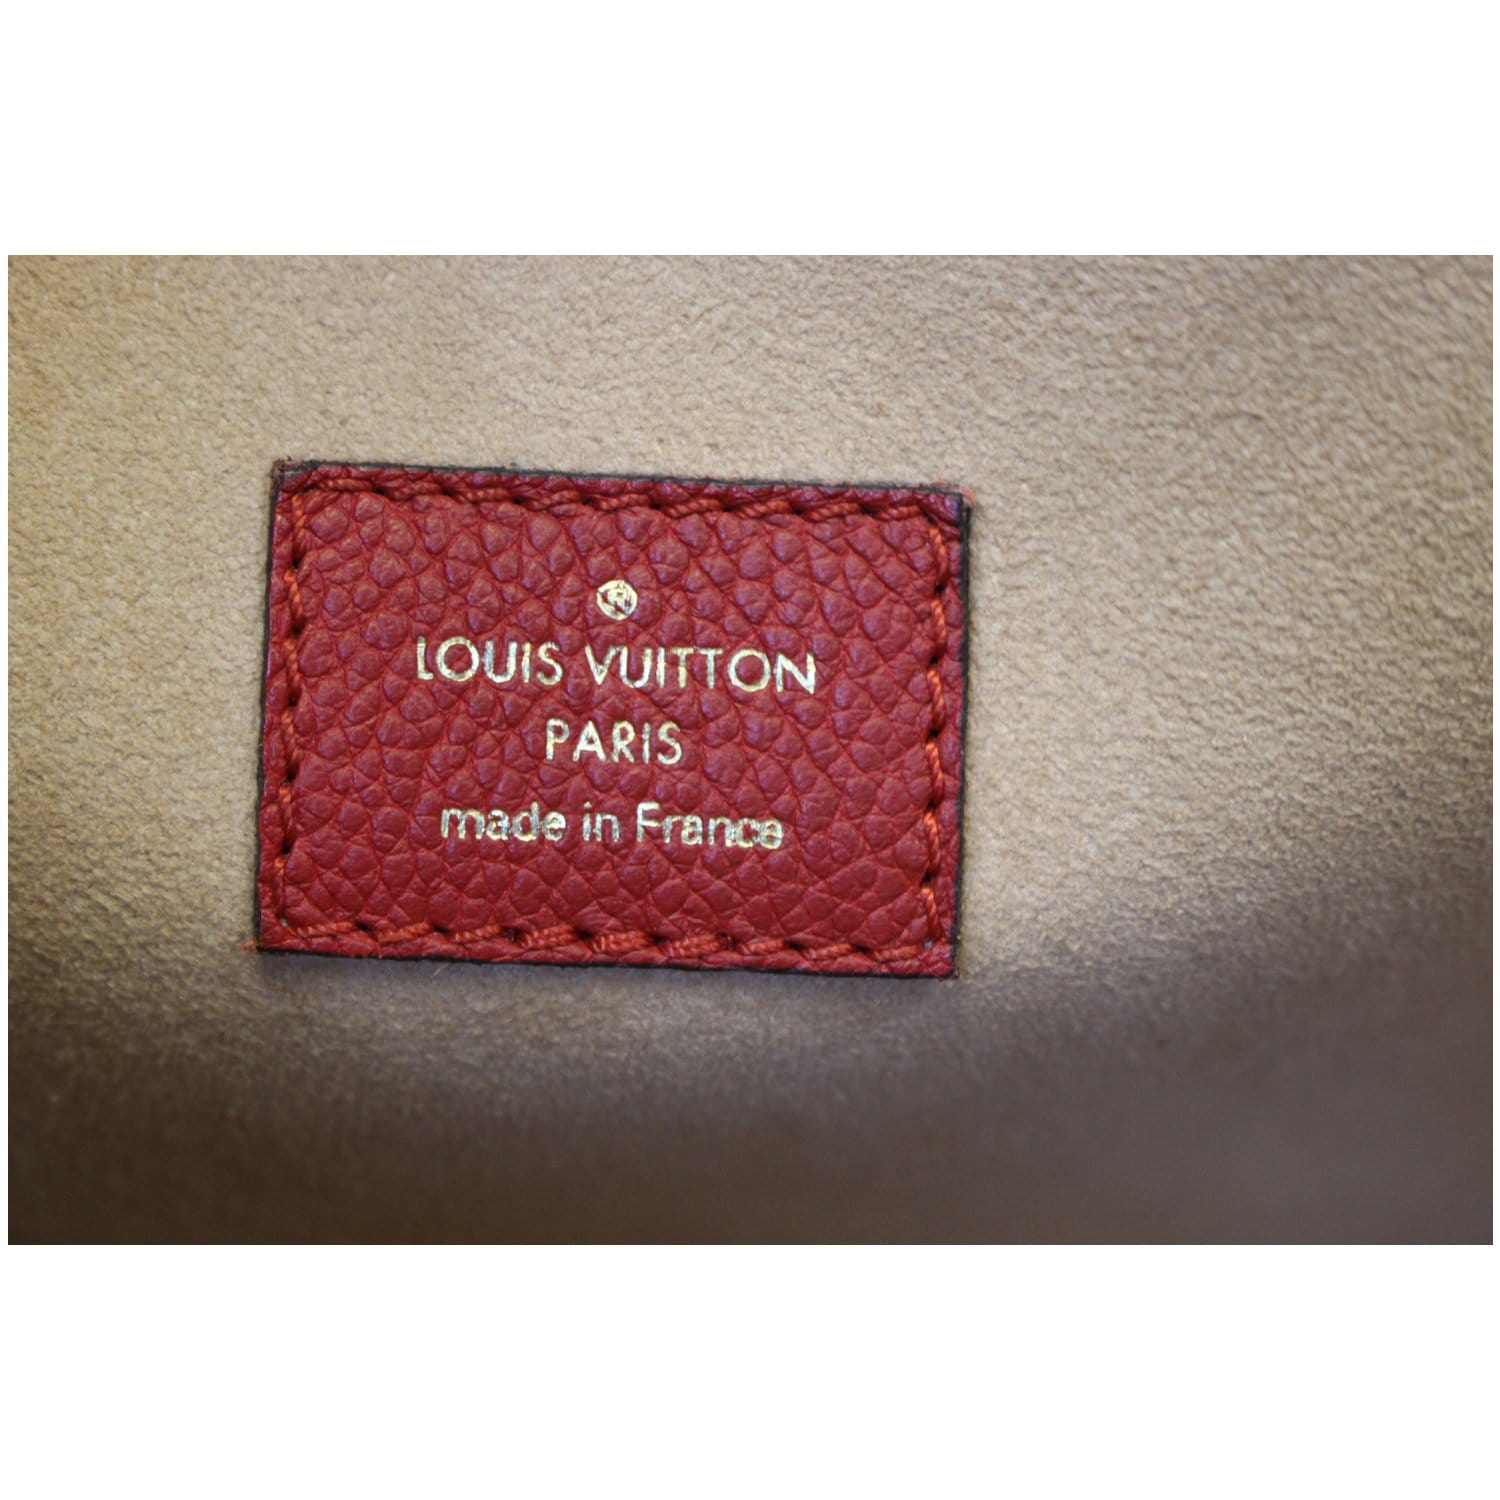 LOUIS VUITTON Flandrin Monogram Canvas Shoulder Handbag TT2870